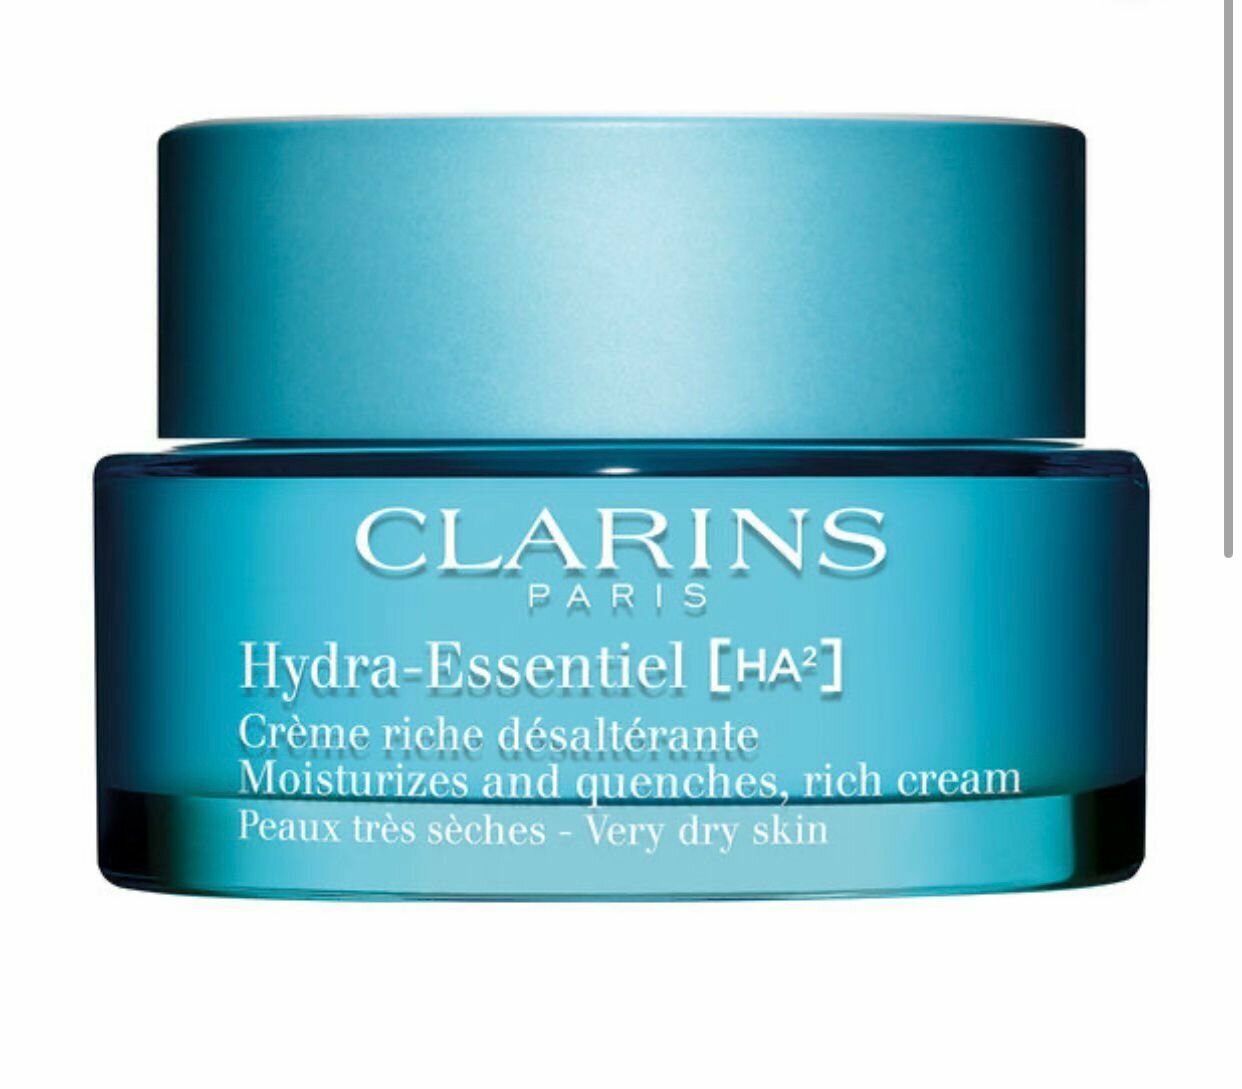 CLARINS Hydra-Essentiel Дневной крем с насыщенной текстурой для очень сухой кожи увлажняющий, 50 мл